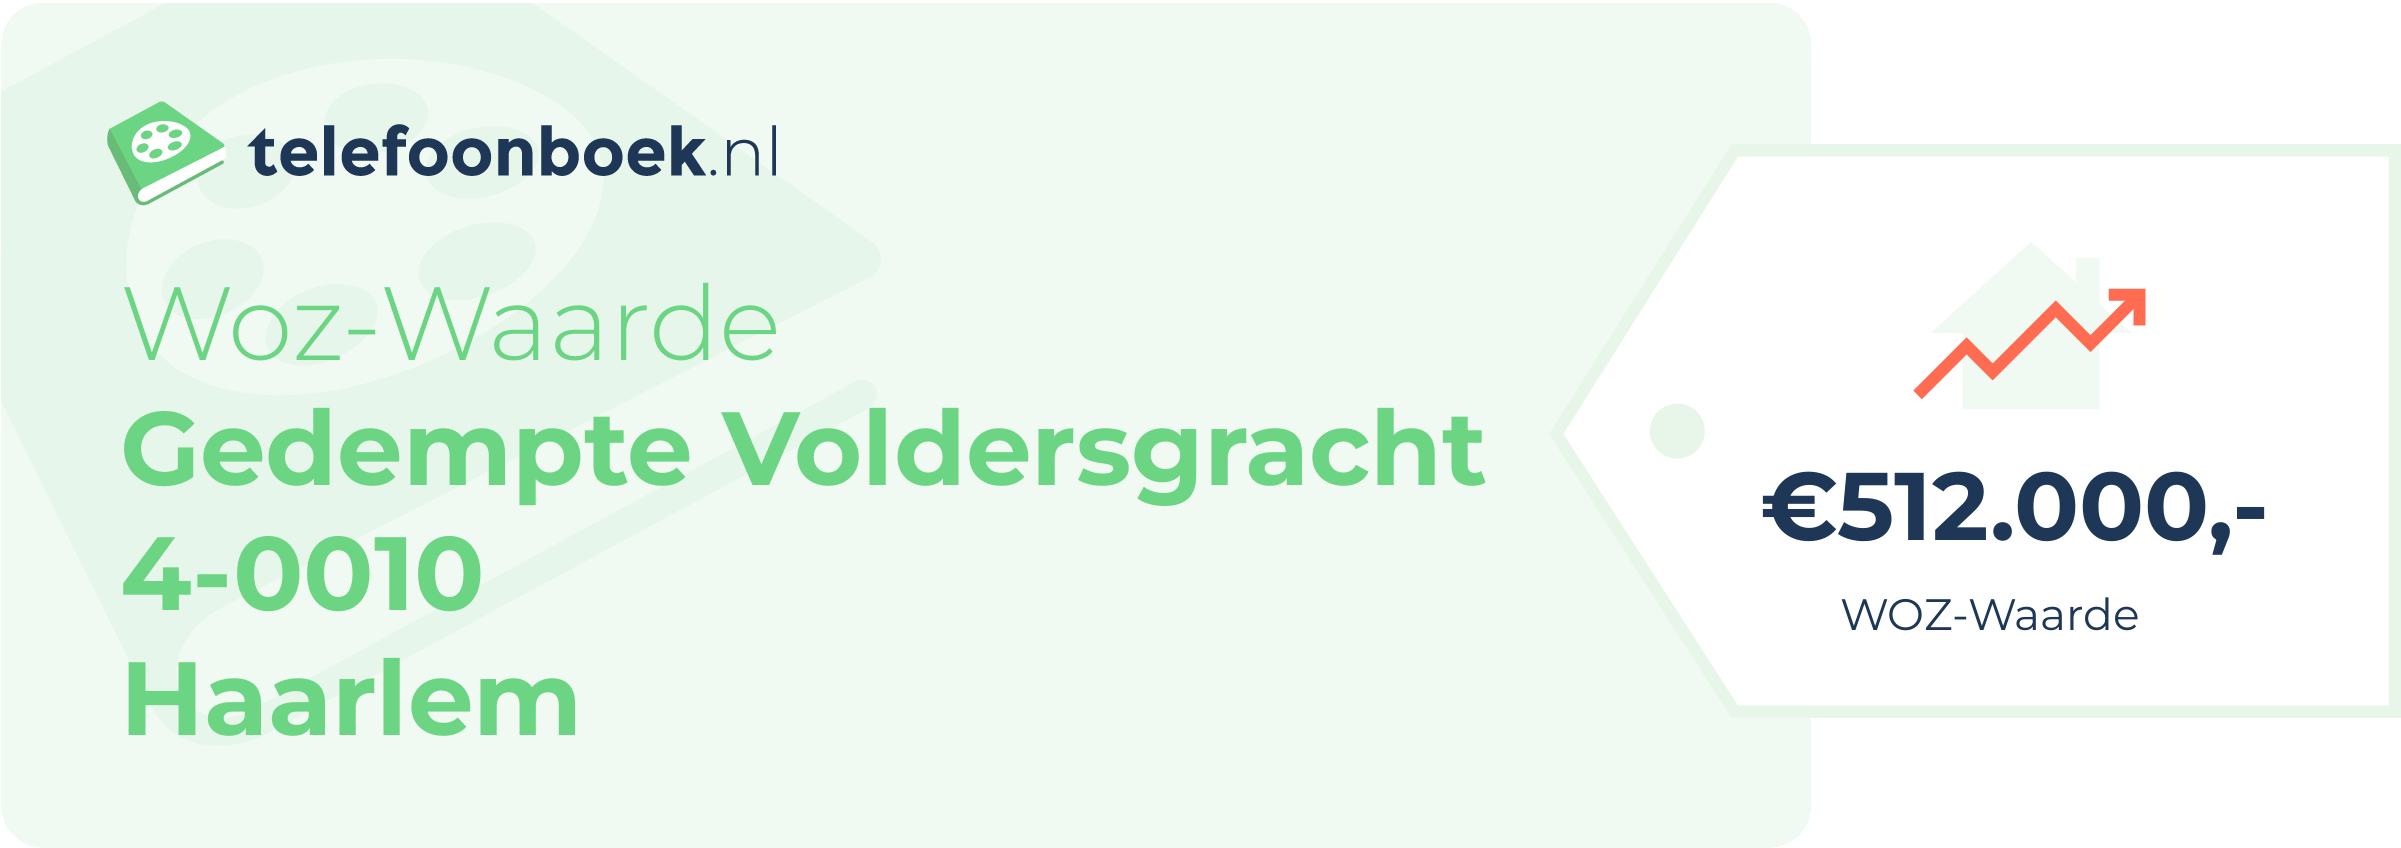 WOZ-waarde Gedempte Voldersgracht 4-0010 Haarlem